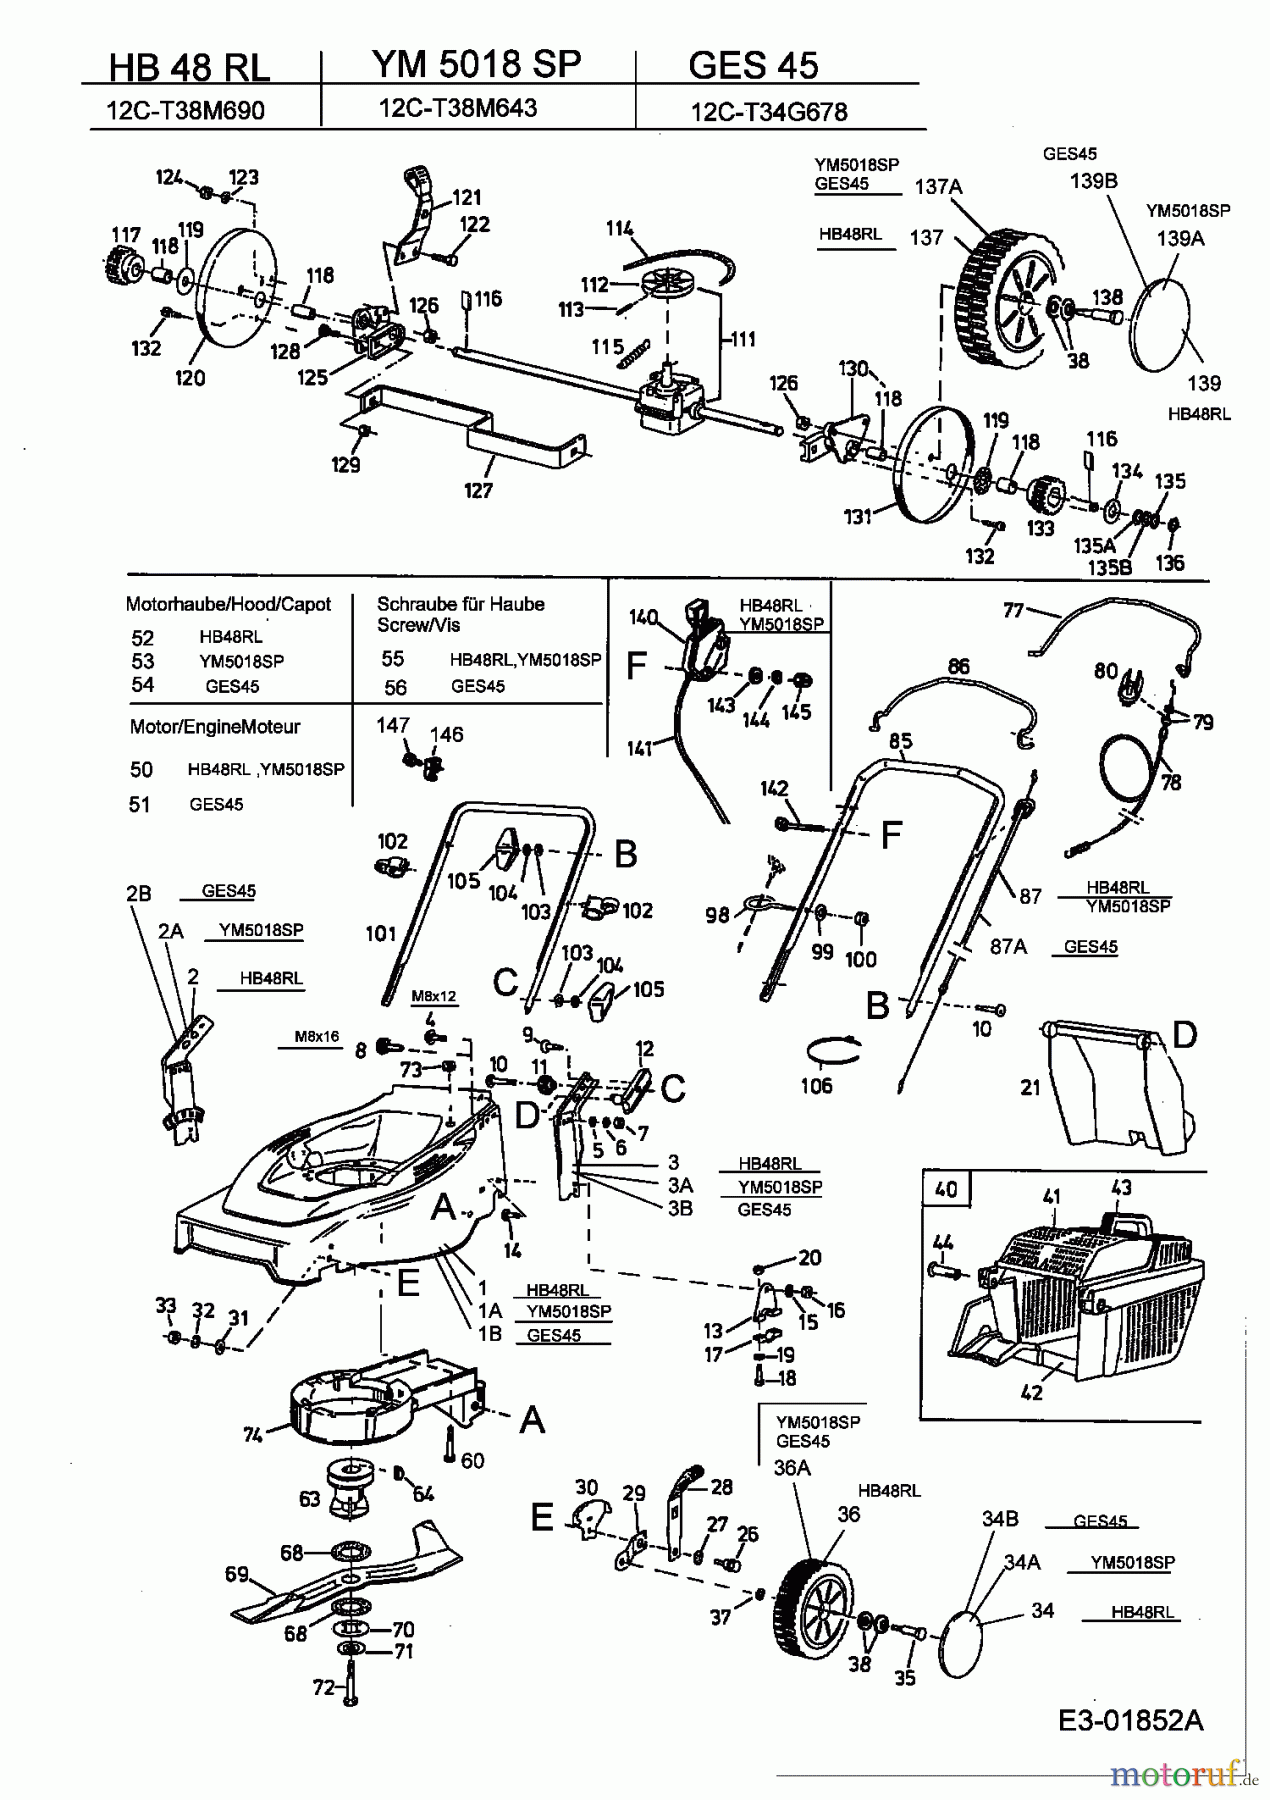  MTD Motormäher mit Antrieb GES 45 12C-T34G678  (2003) Grundgerät